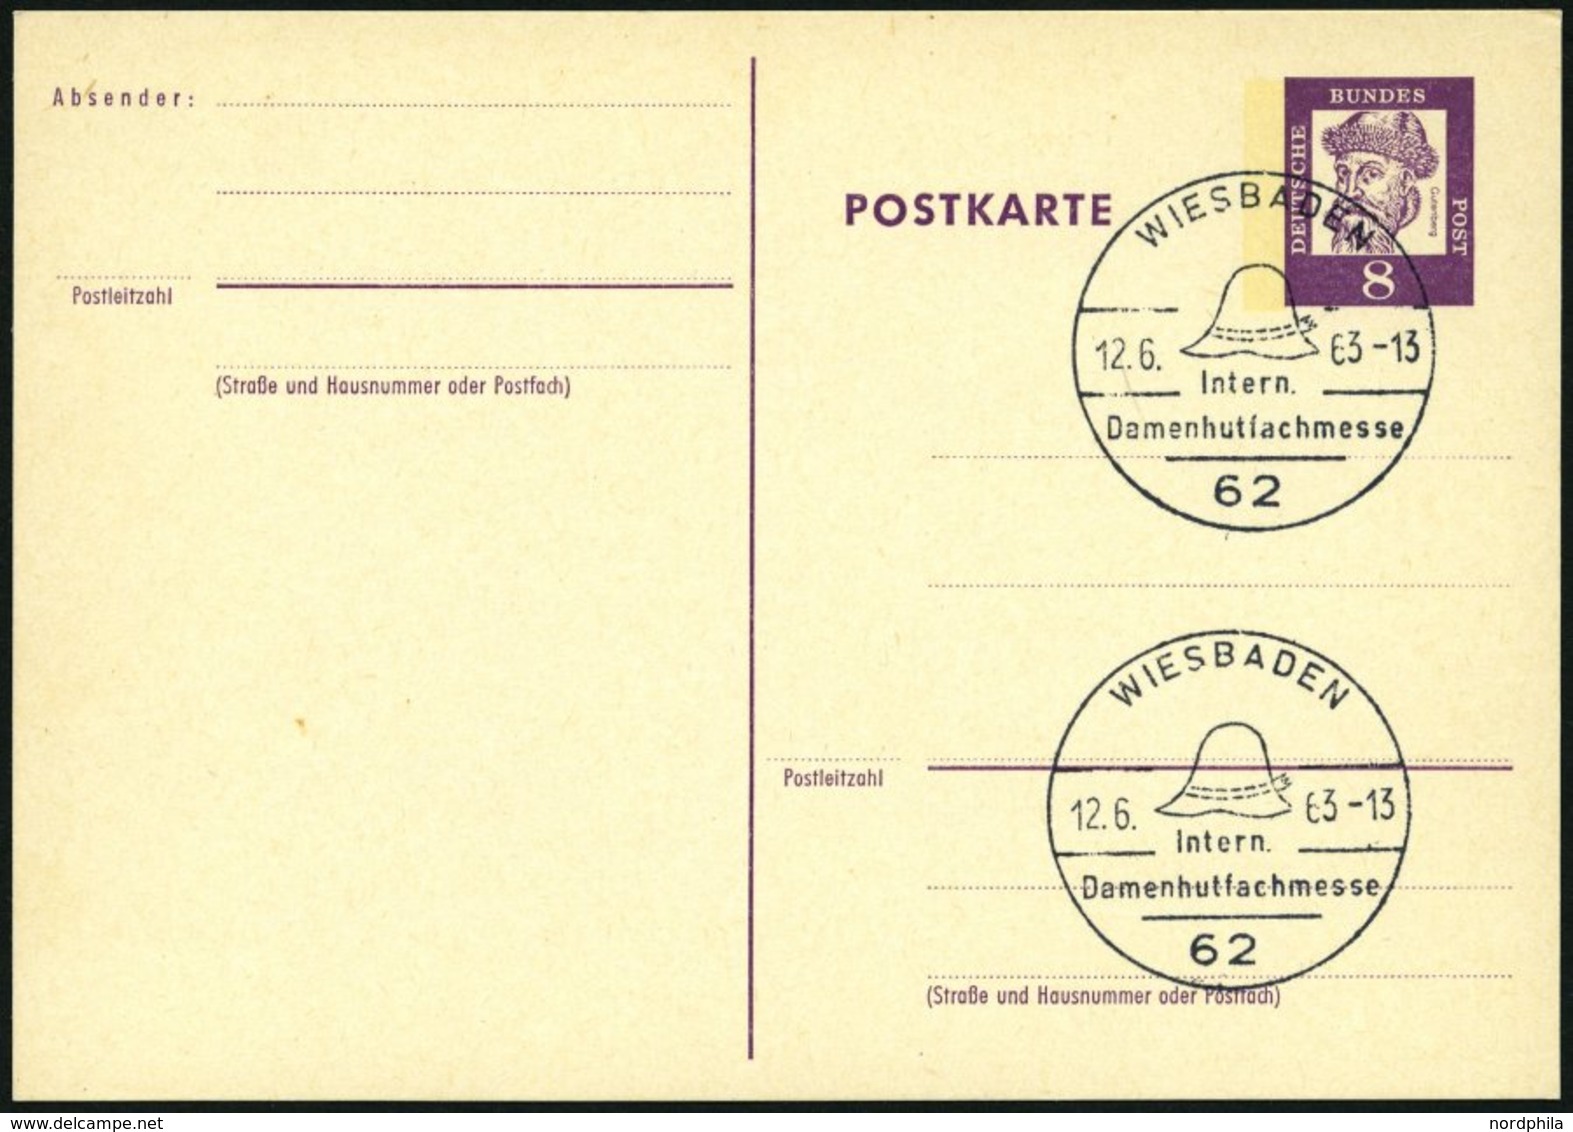 GANZSACHEN P 73 BRIEF, 1962, 8 Pf. Gutenberg, Postkarte In Grotesk-Schrift, Leer Gestempelt Mit Sonderstempel WIESBADEN  - Sammlungen